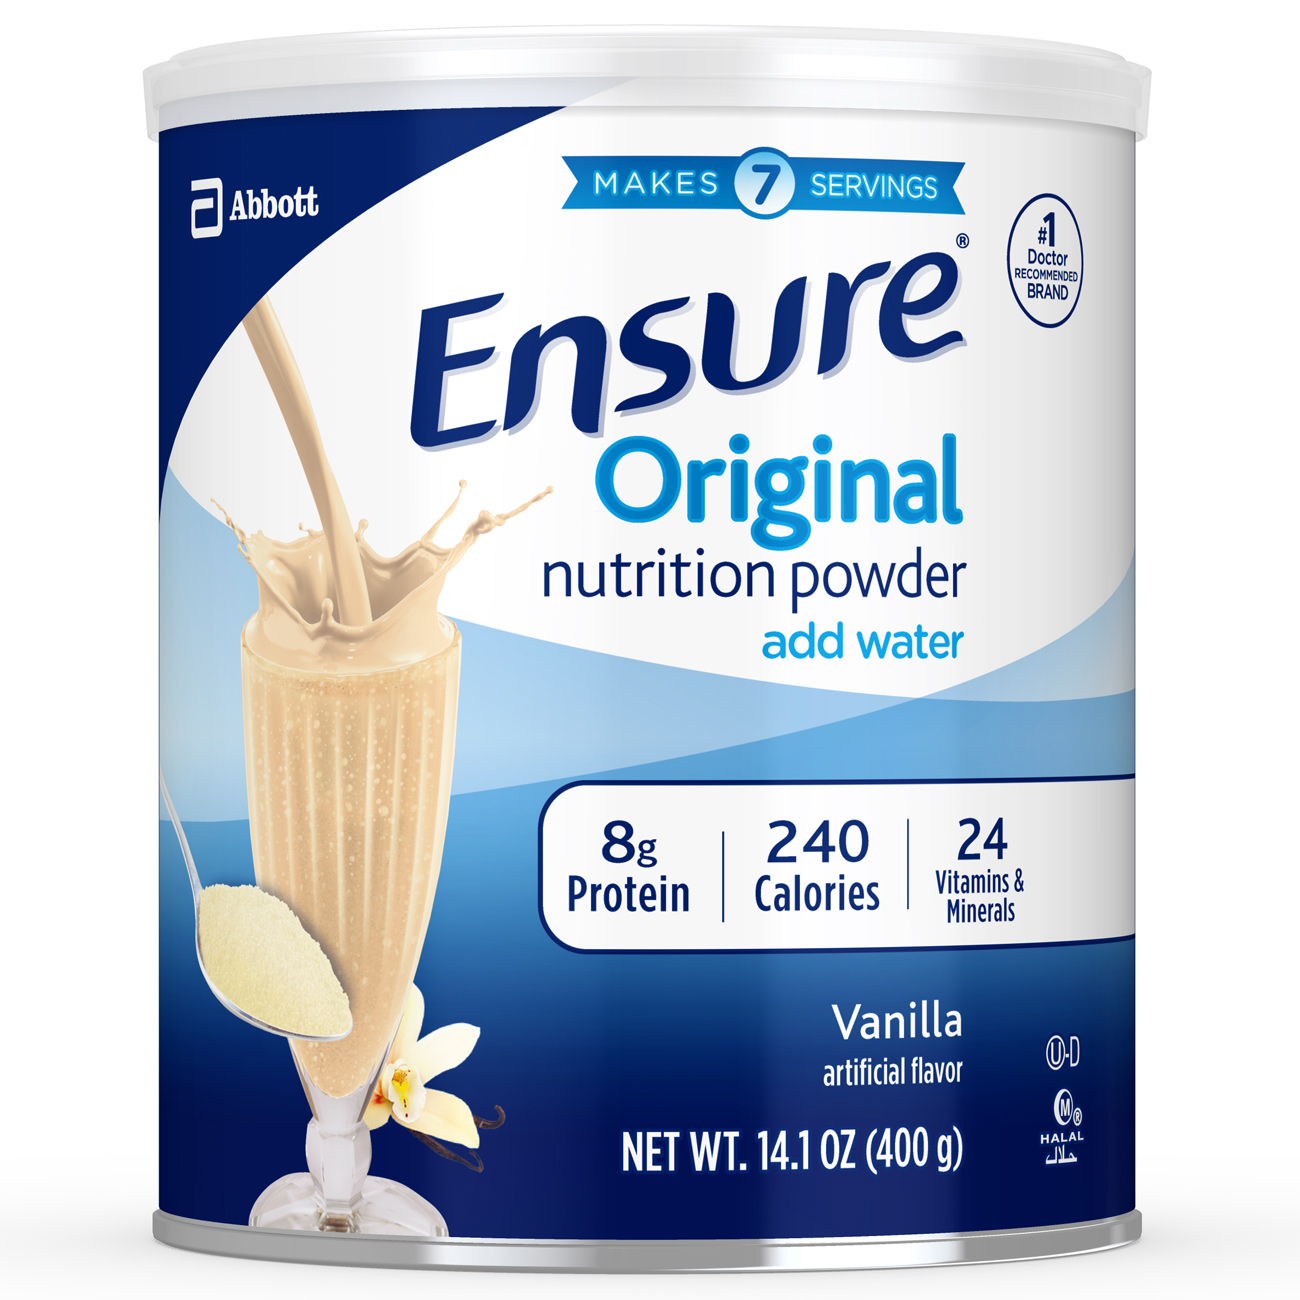 Ensure Original Nutrition Powder Vanilla Image